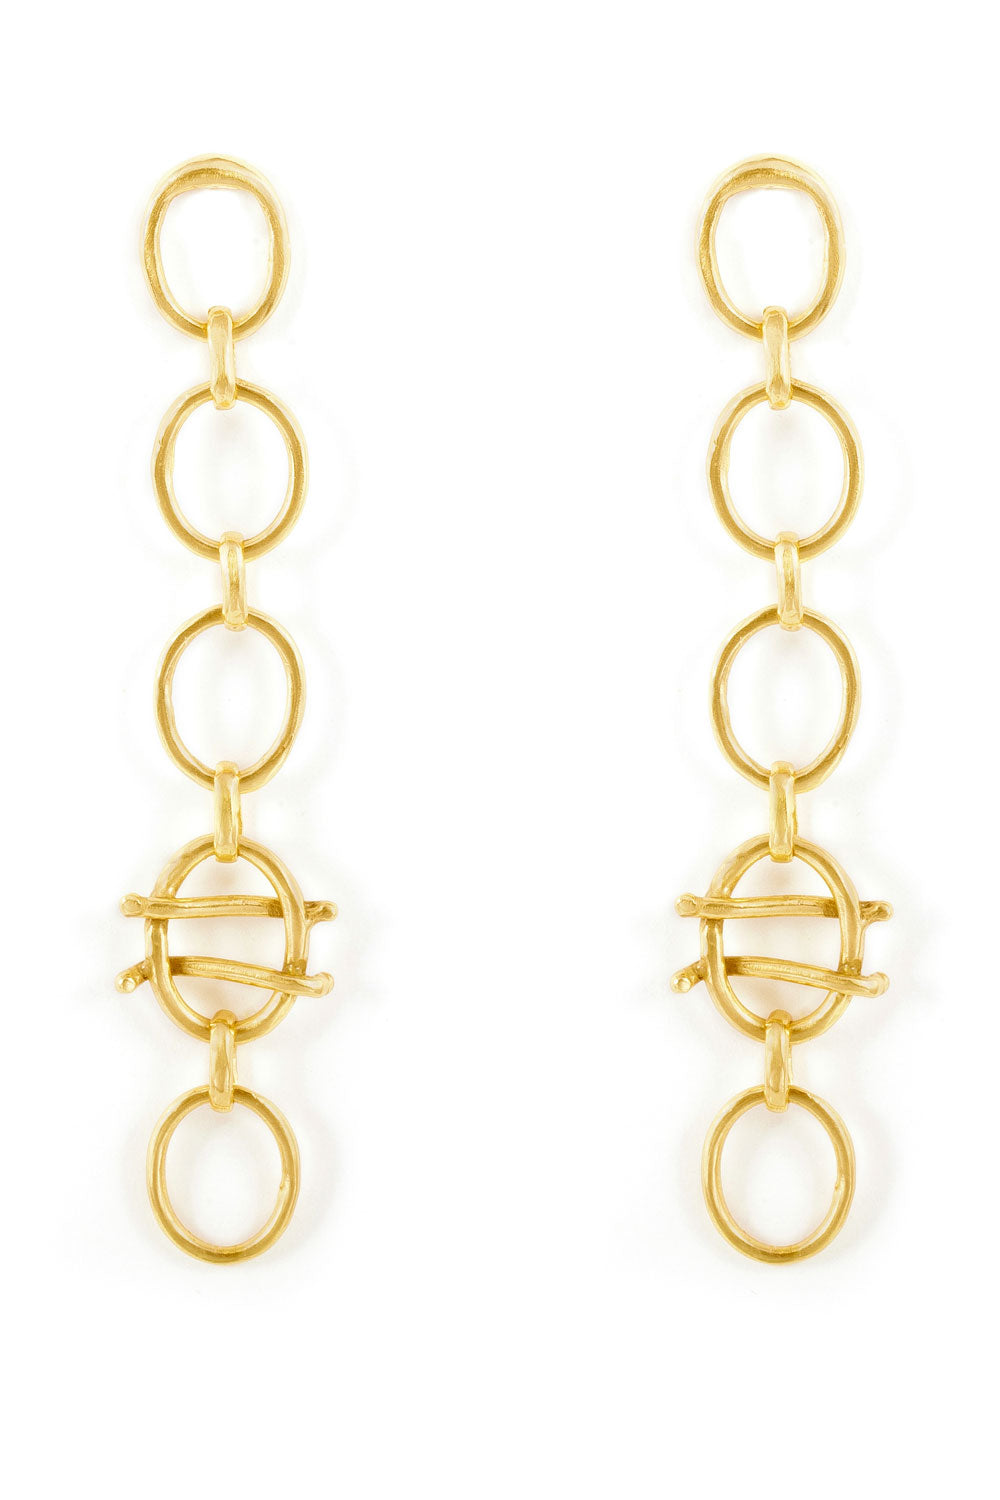 Orecchini - Unio Earrings - Giulia Barela Jewelry | Gioielli eleganti e particolari fatti in Italia